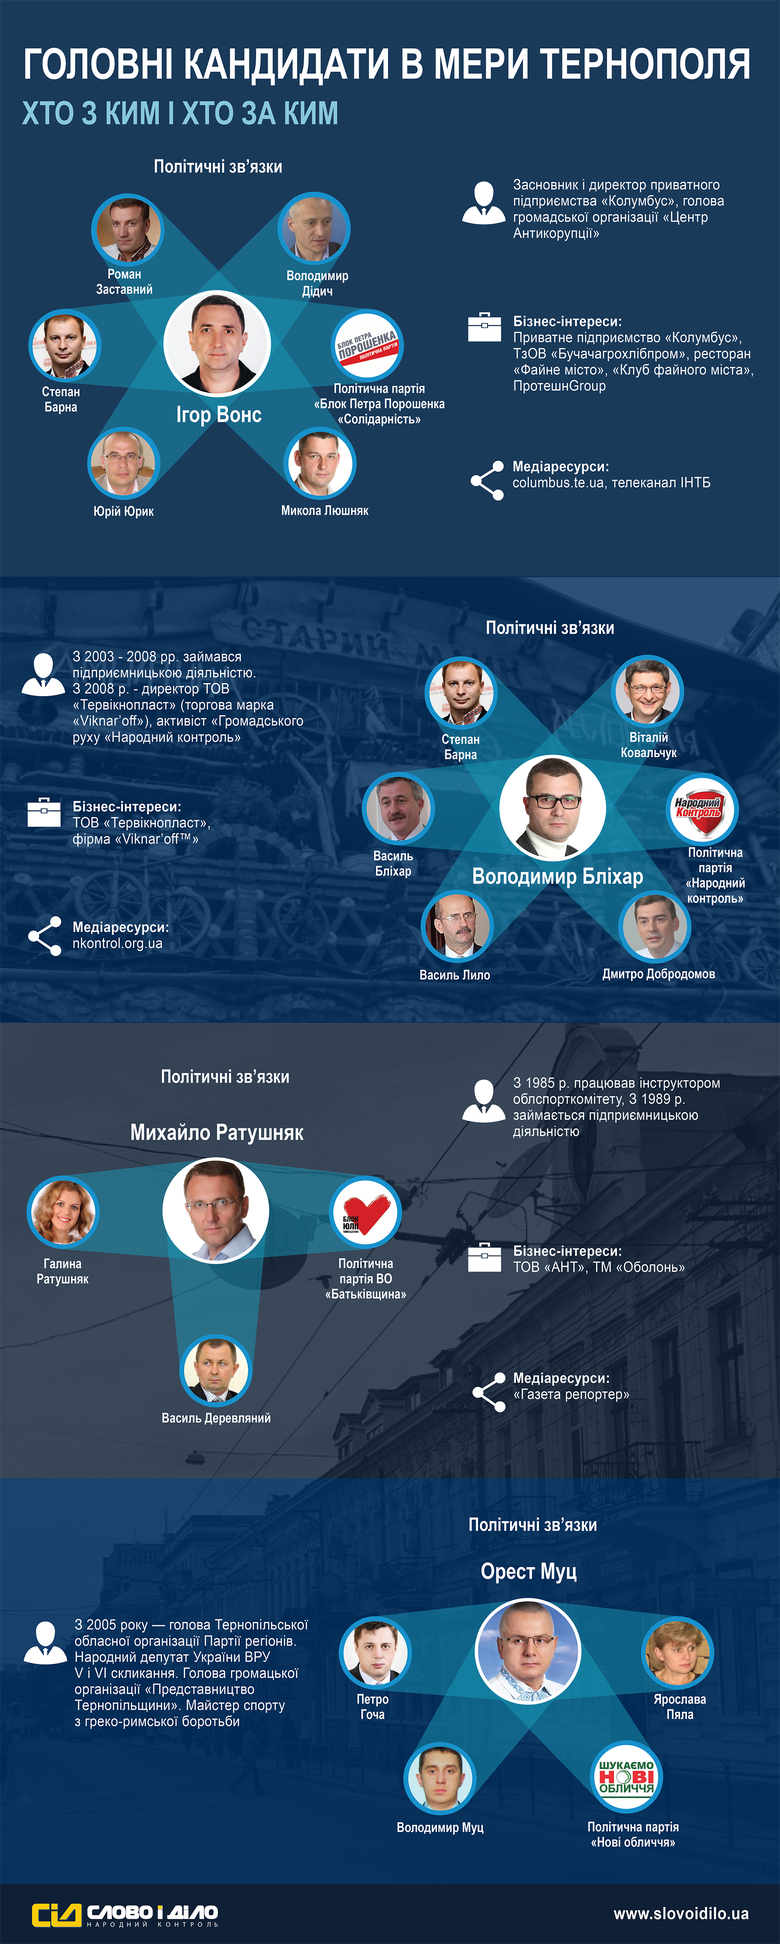 В рамках спецпроекта «ОБРАНІ» журналисты «Слова и Дела» выяснили, каким политическим, деловым, а также информационным ресурсом прямо или косвенно владеют потенциальные кандидаты в мэры Тернополя.